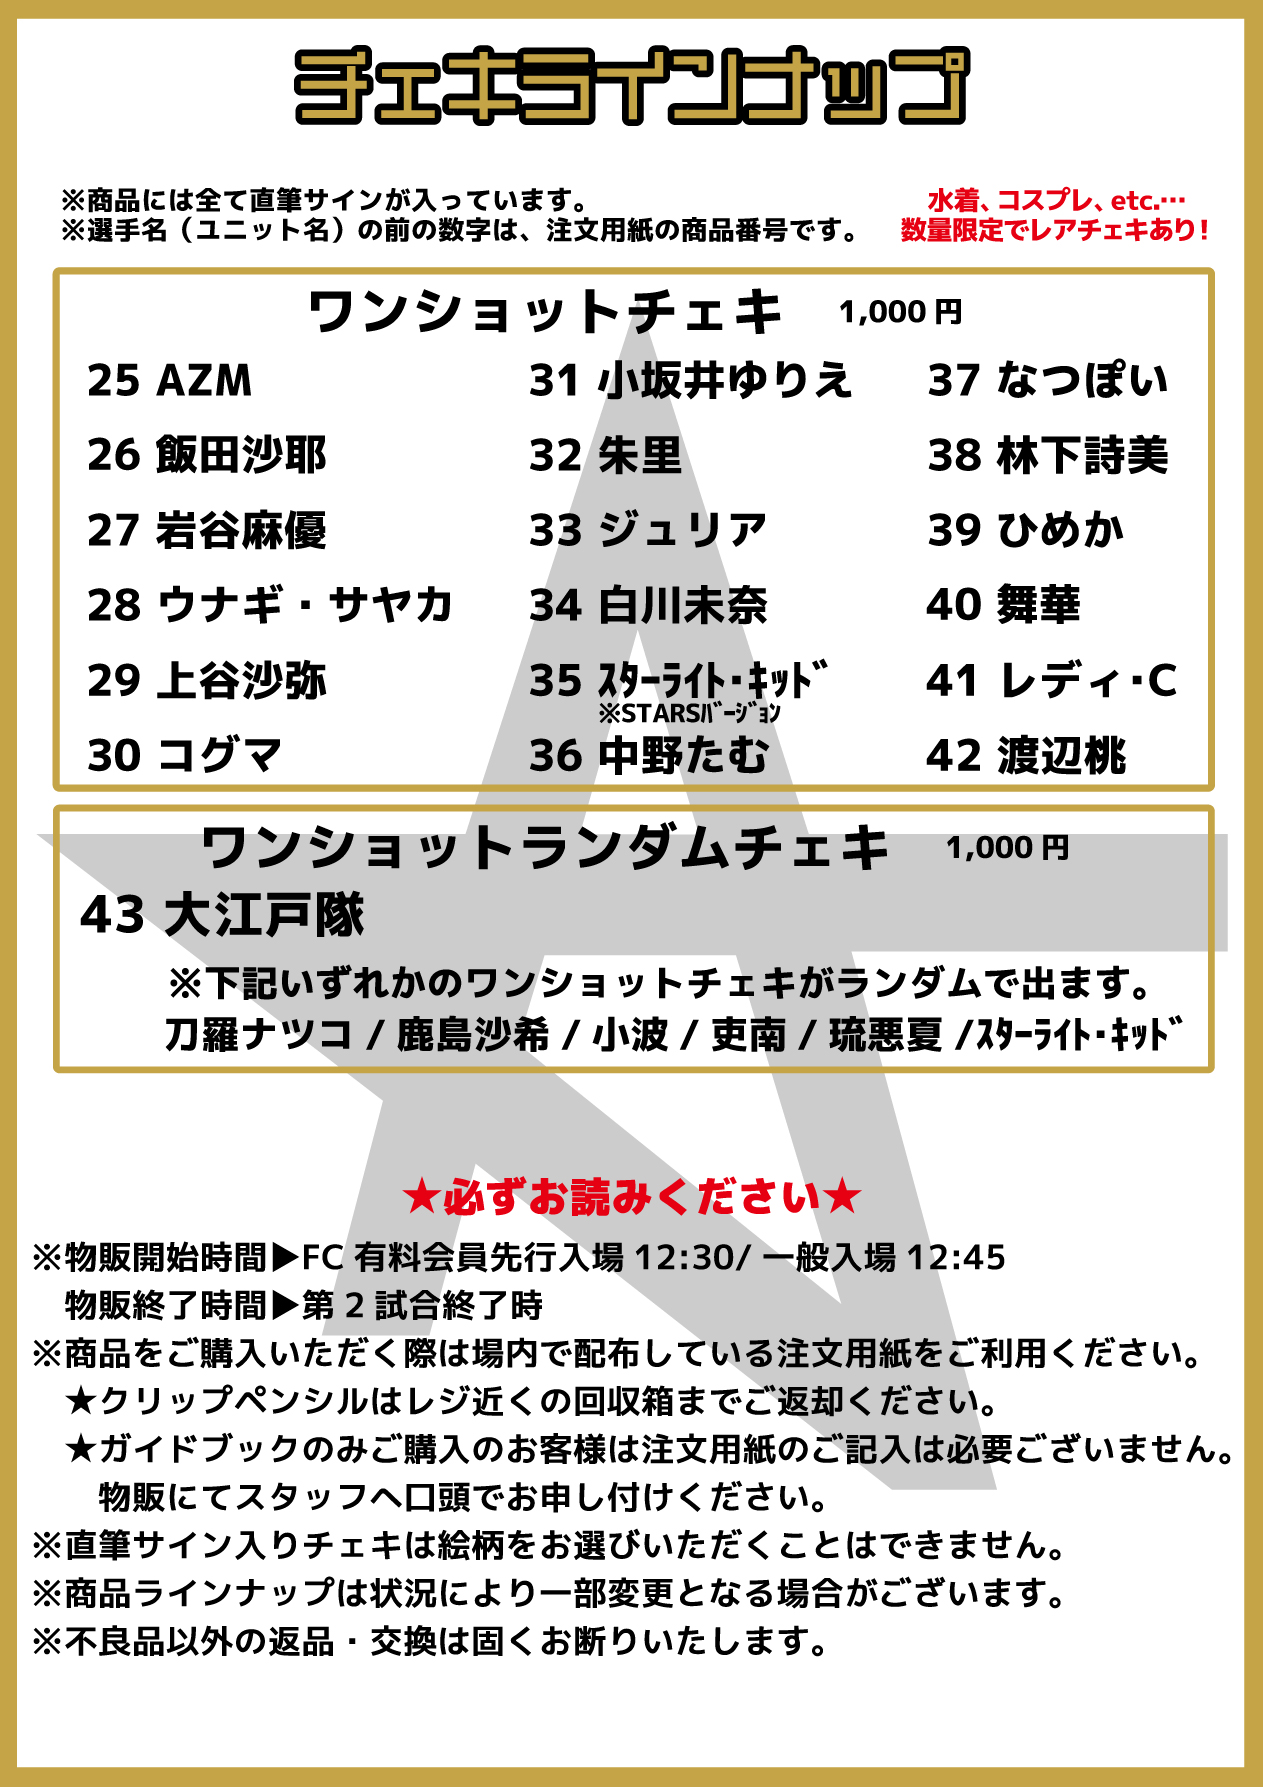 会場物販】9・11『5☆STAR GP 2021』東京・新宿住友ホール大会グッズ